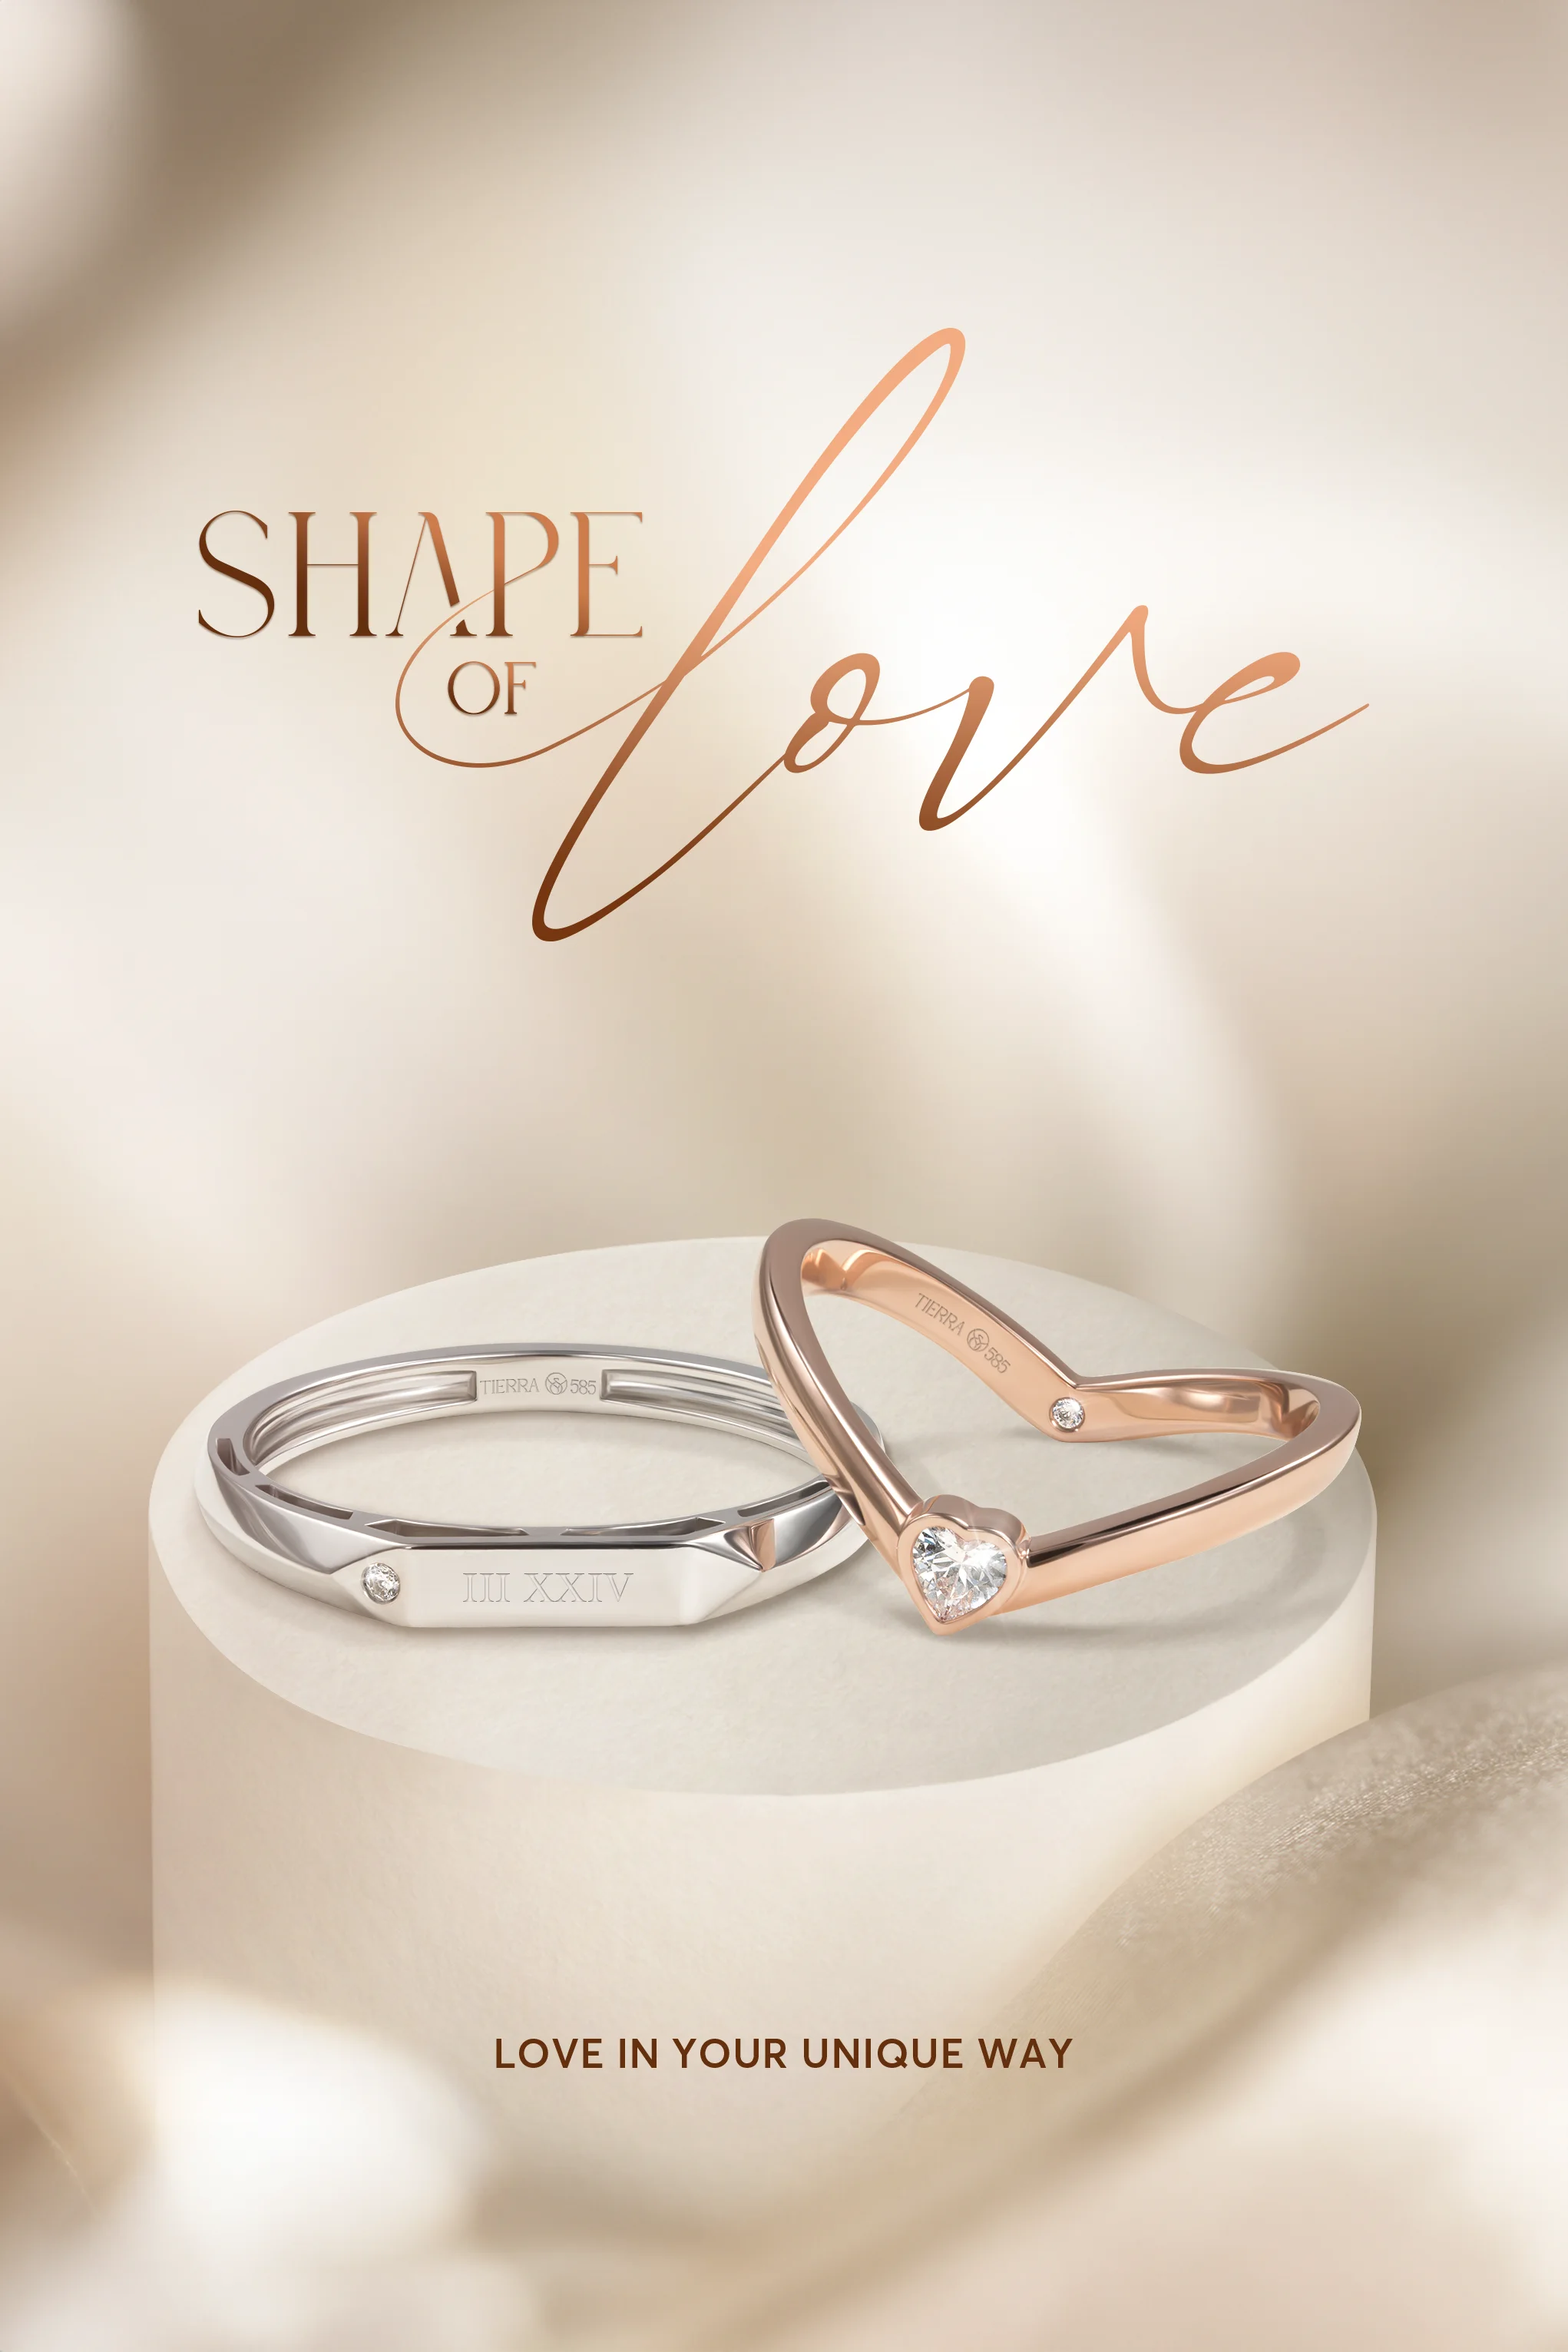 Bộ sưu tập nhẫn cưới mới nhất “Shape Of Love - Love in your unique way